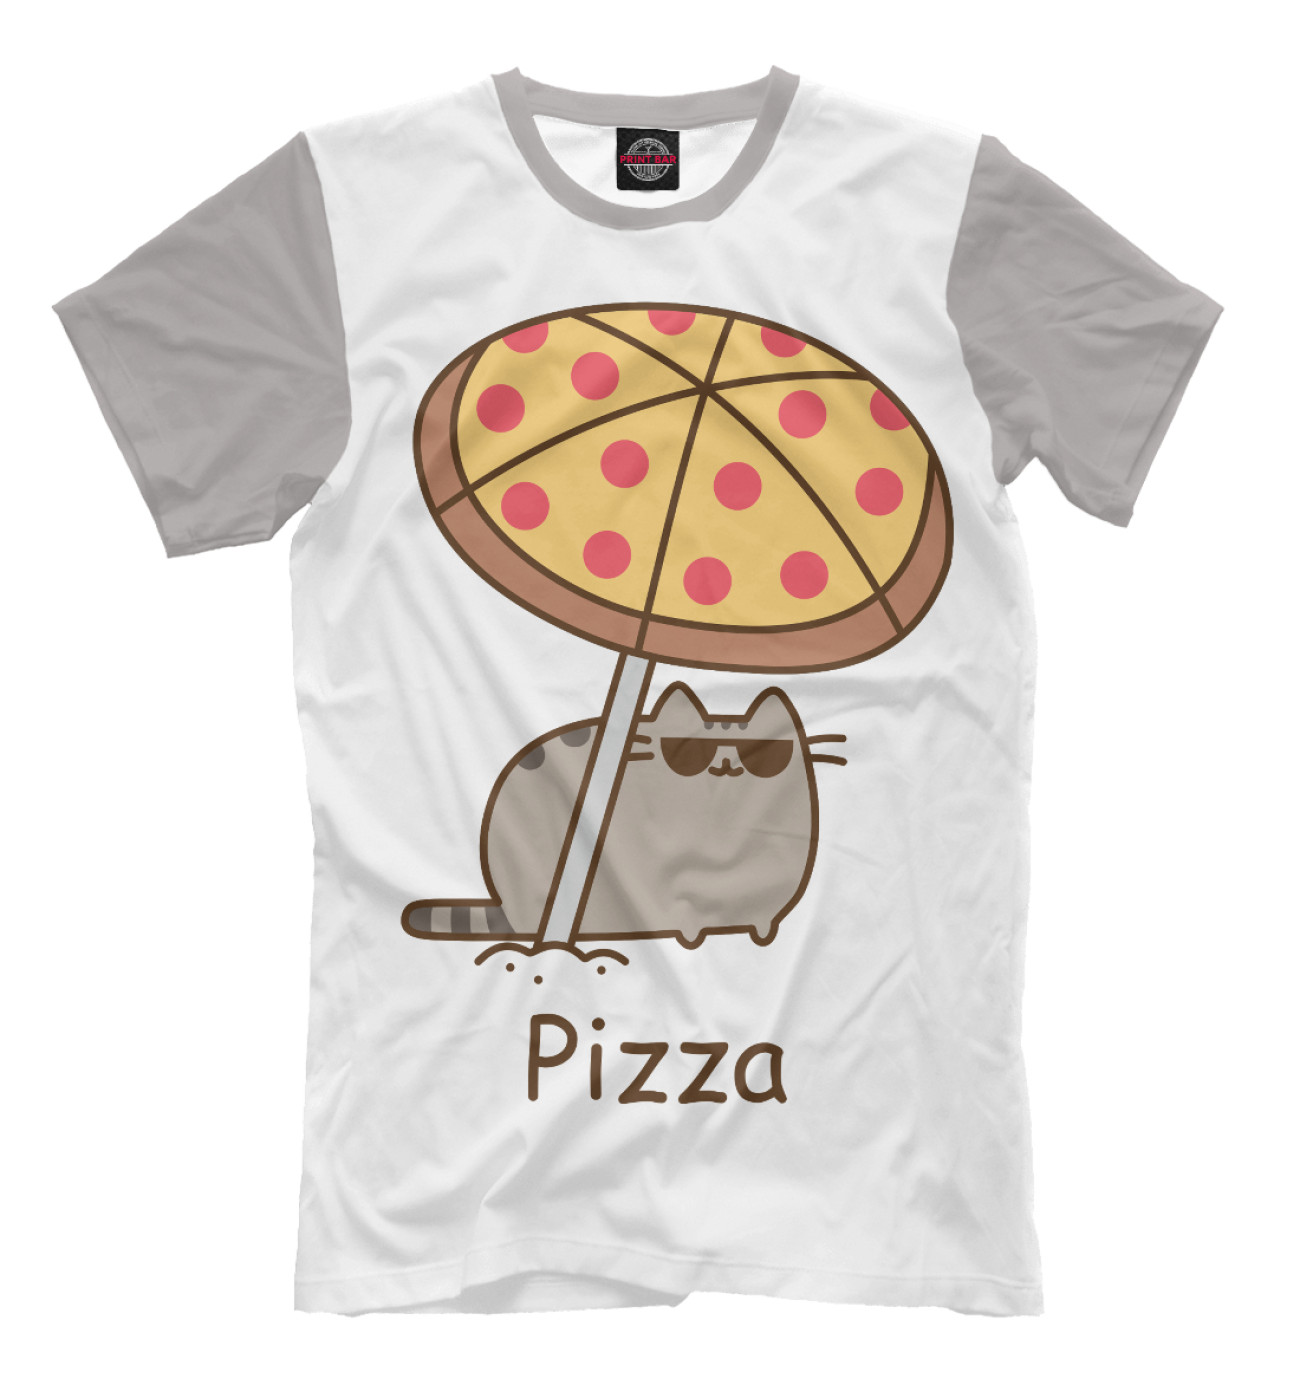 Мужская Футболка Pizza, артикул: CAT-170796-fut-2